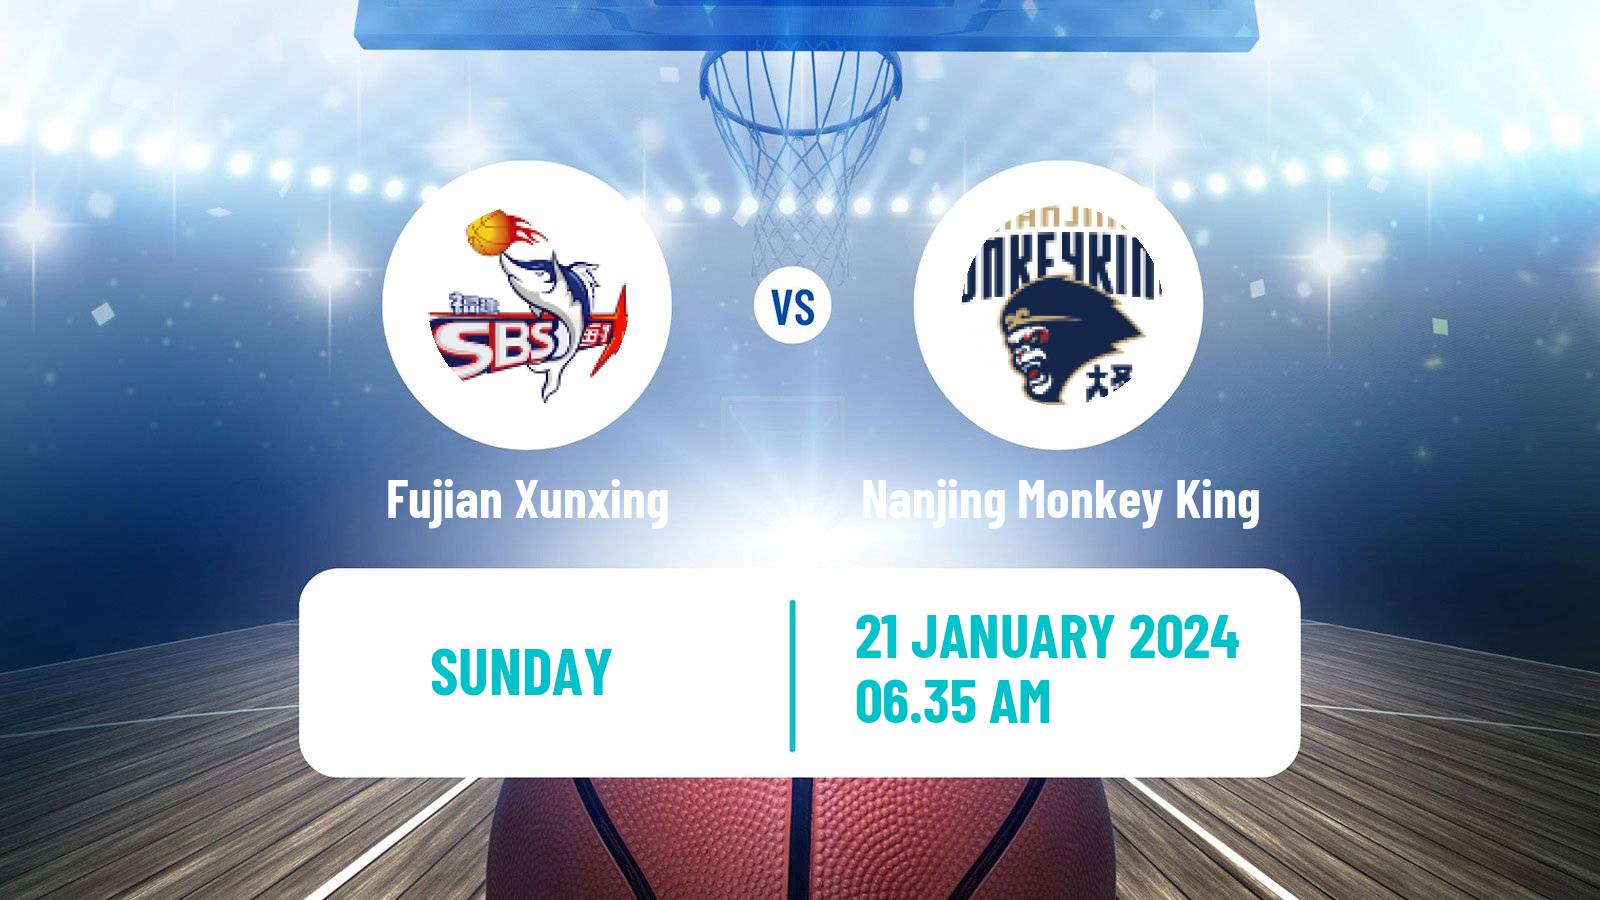 Basketball CBA Fujian Xunxing - Nanjing Monkey King